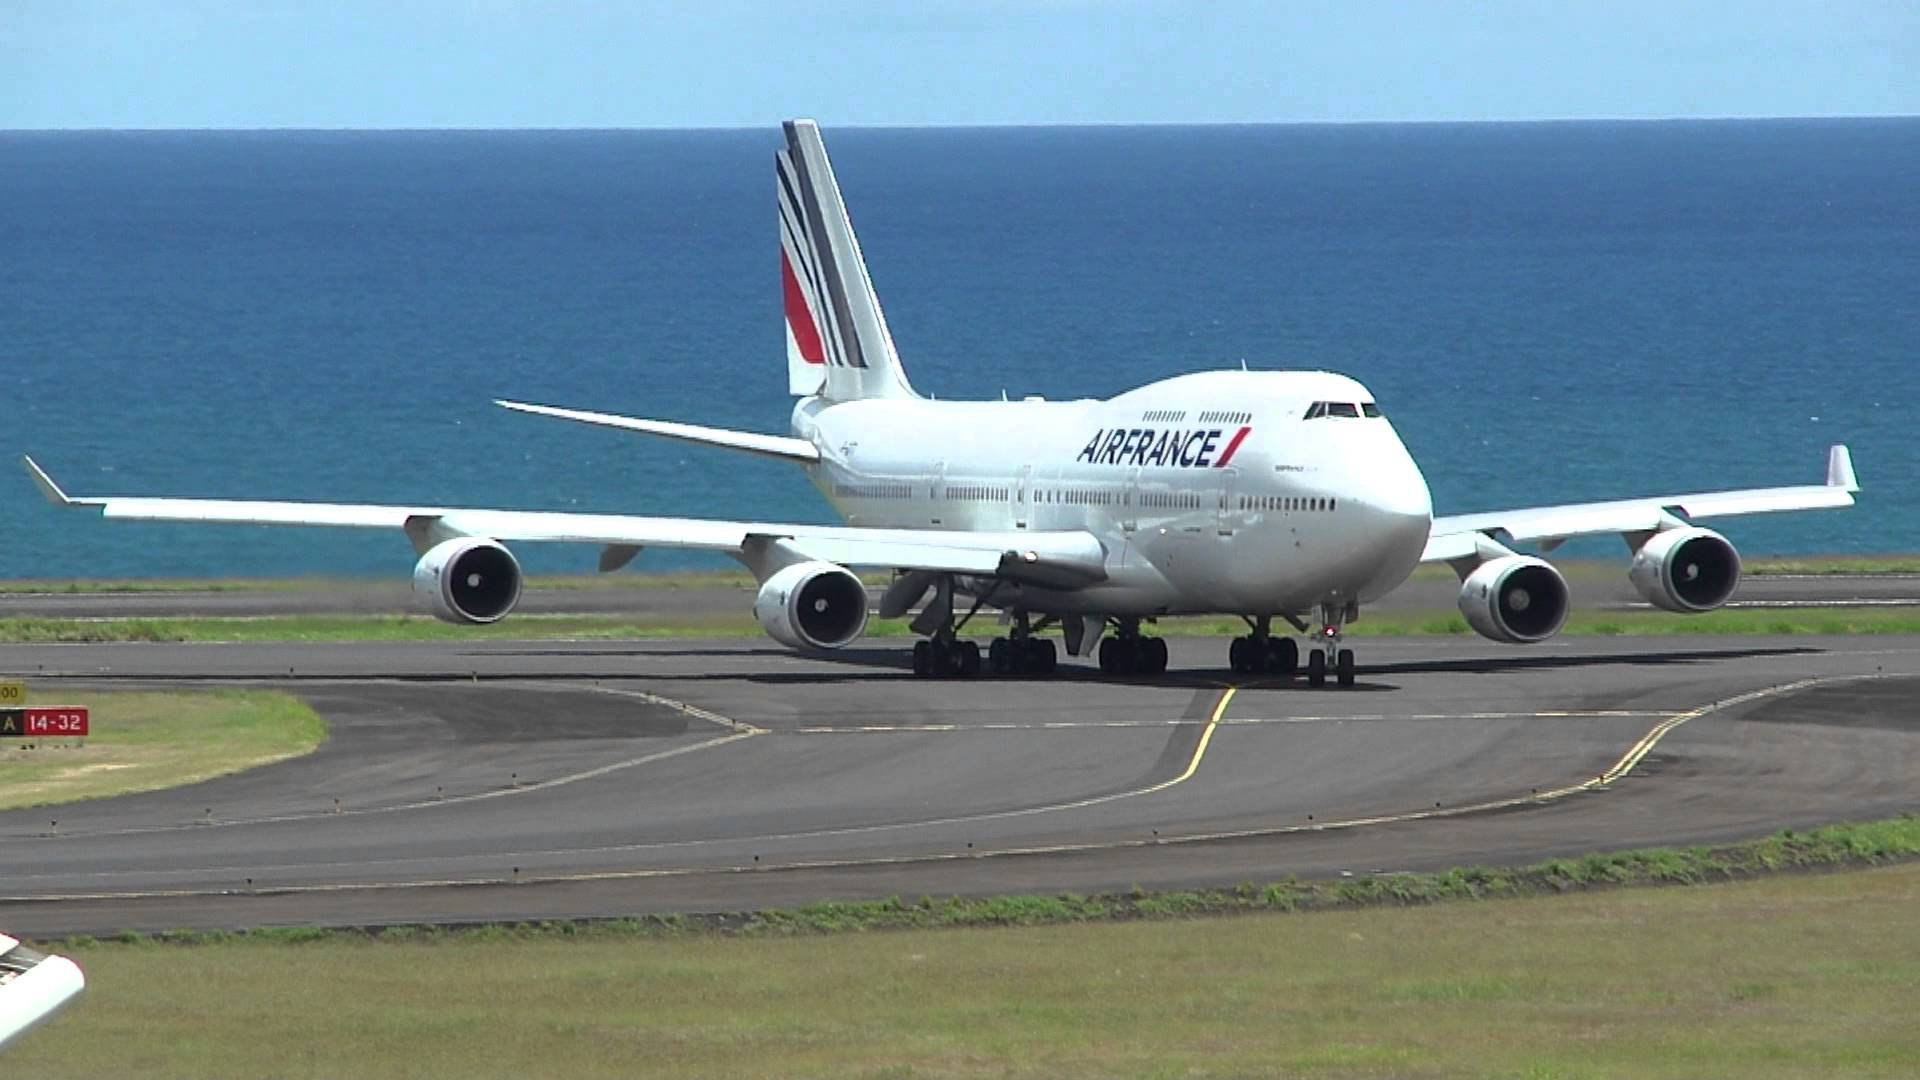 Airfrance Boeing 747-400 Sulla Pista Di Decollo Sfondo